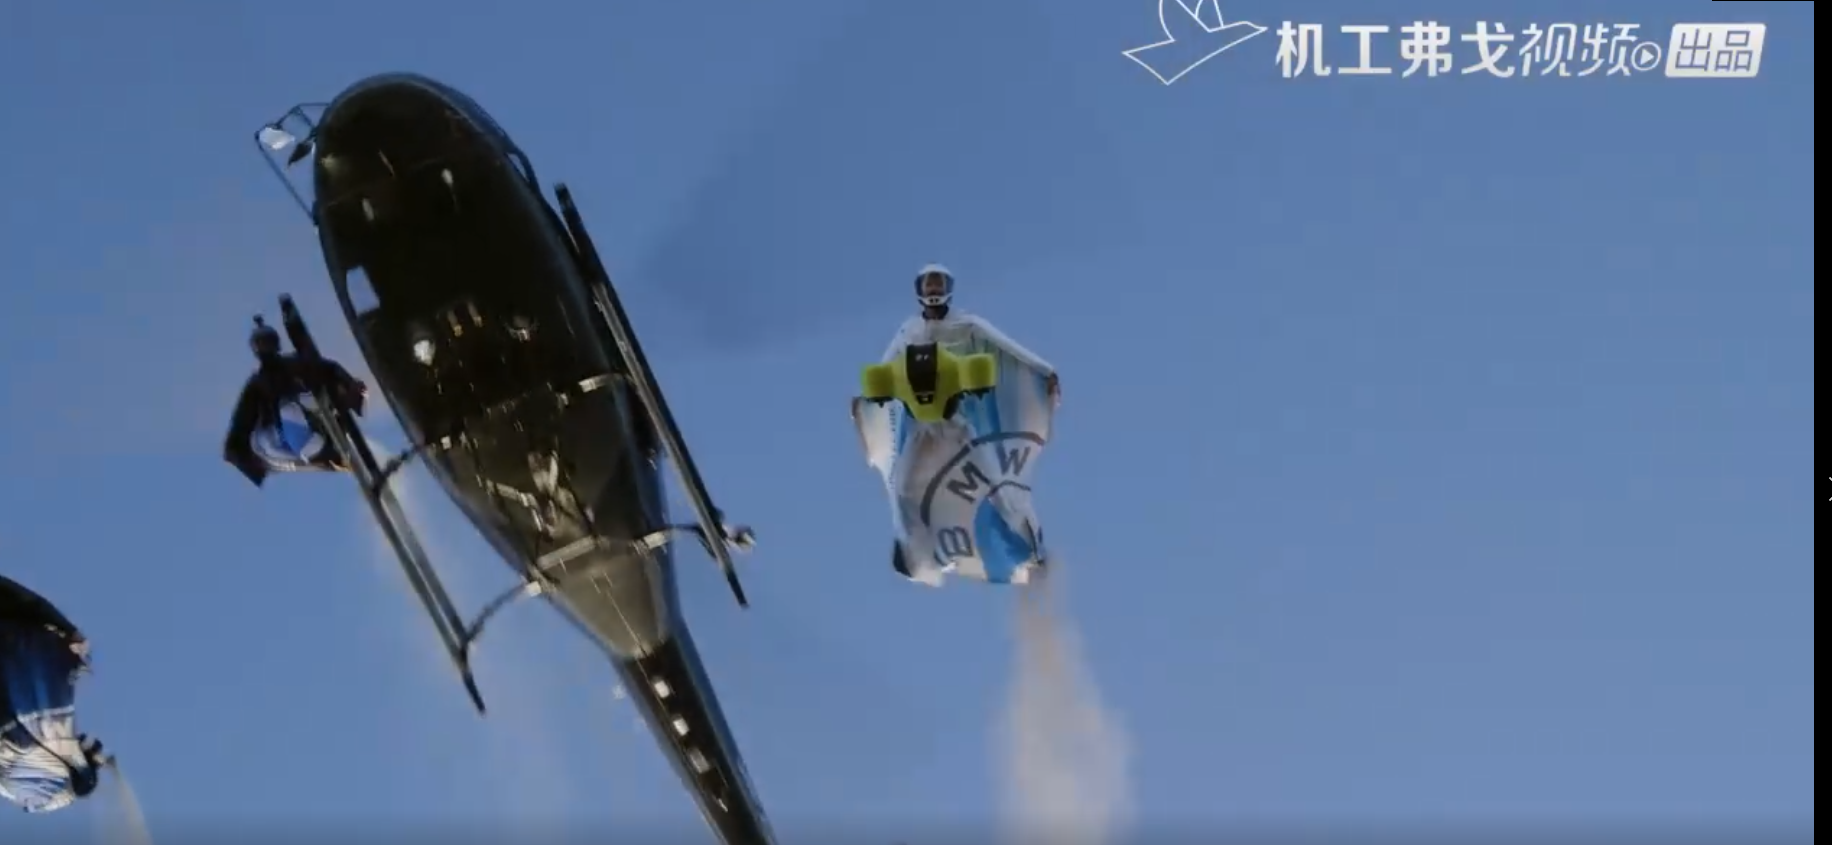 【弗戈工业趣闻】宝马推出世界上第一款电动滑翔服